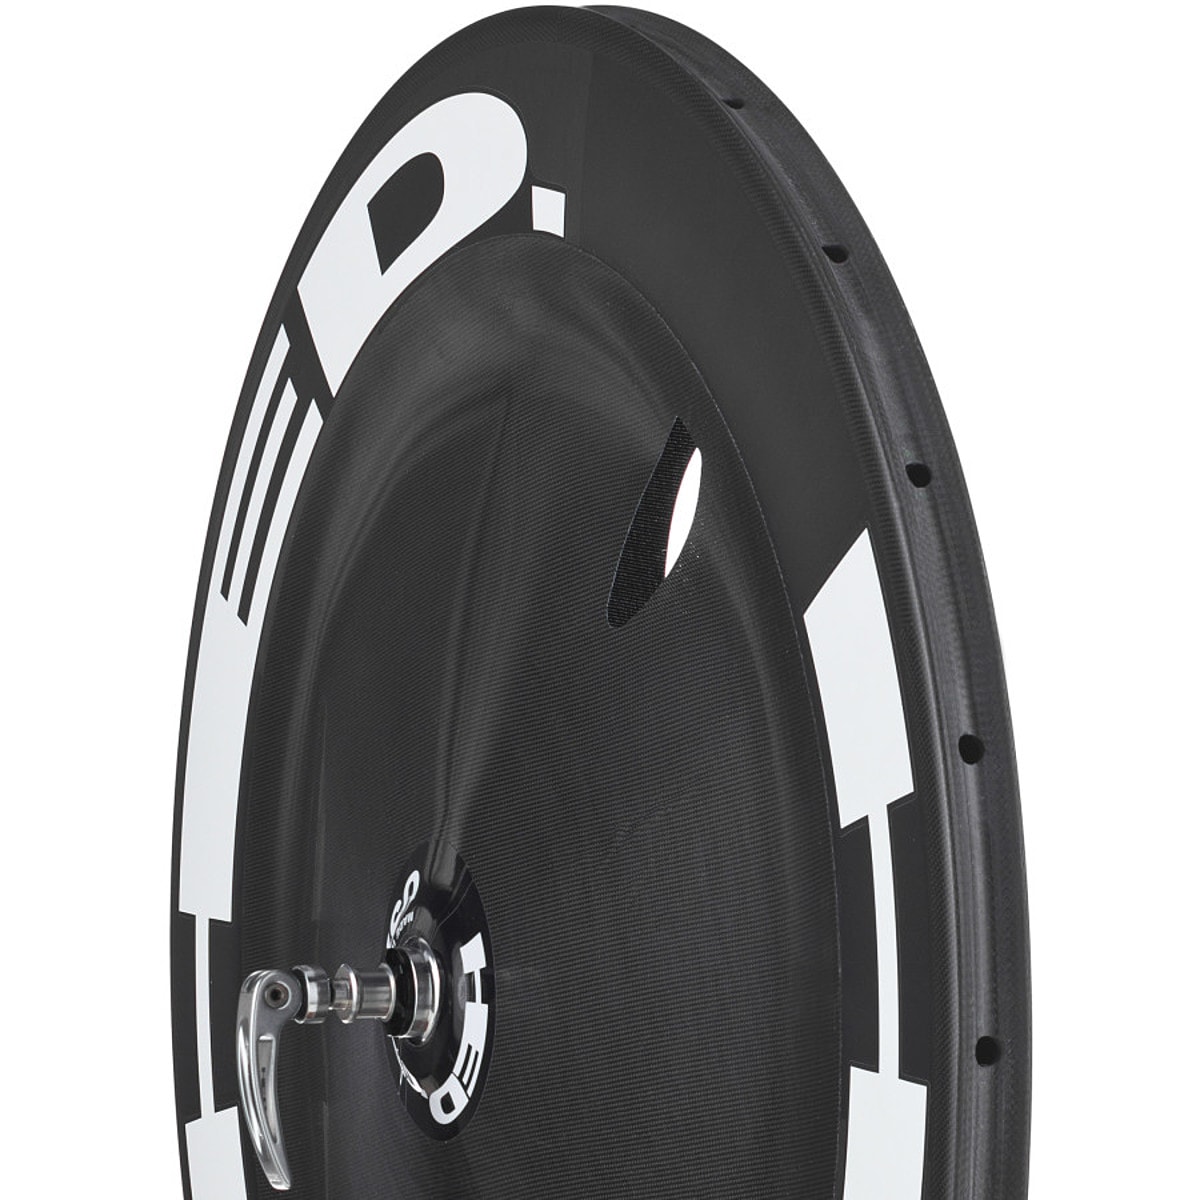 HED Stinger Disc FR Carbon Road Wheel - Tubular